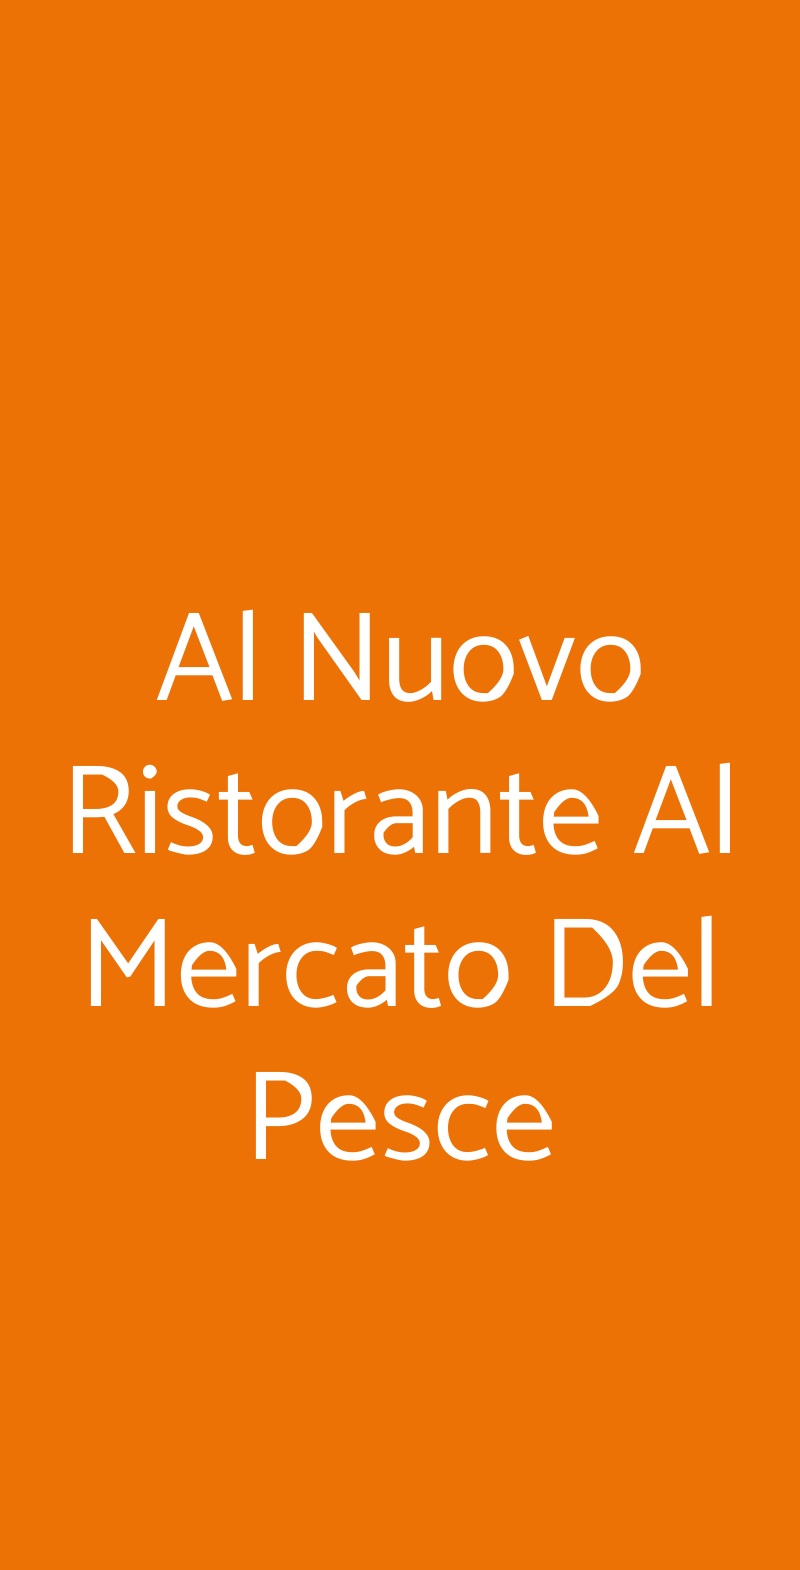 Al Nuovo Ristorante Al Mercato Del Pesce Milano menù 1 pagina